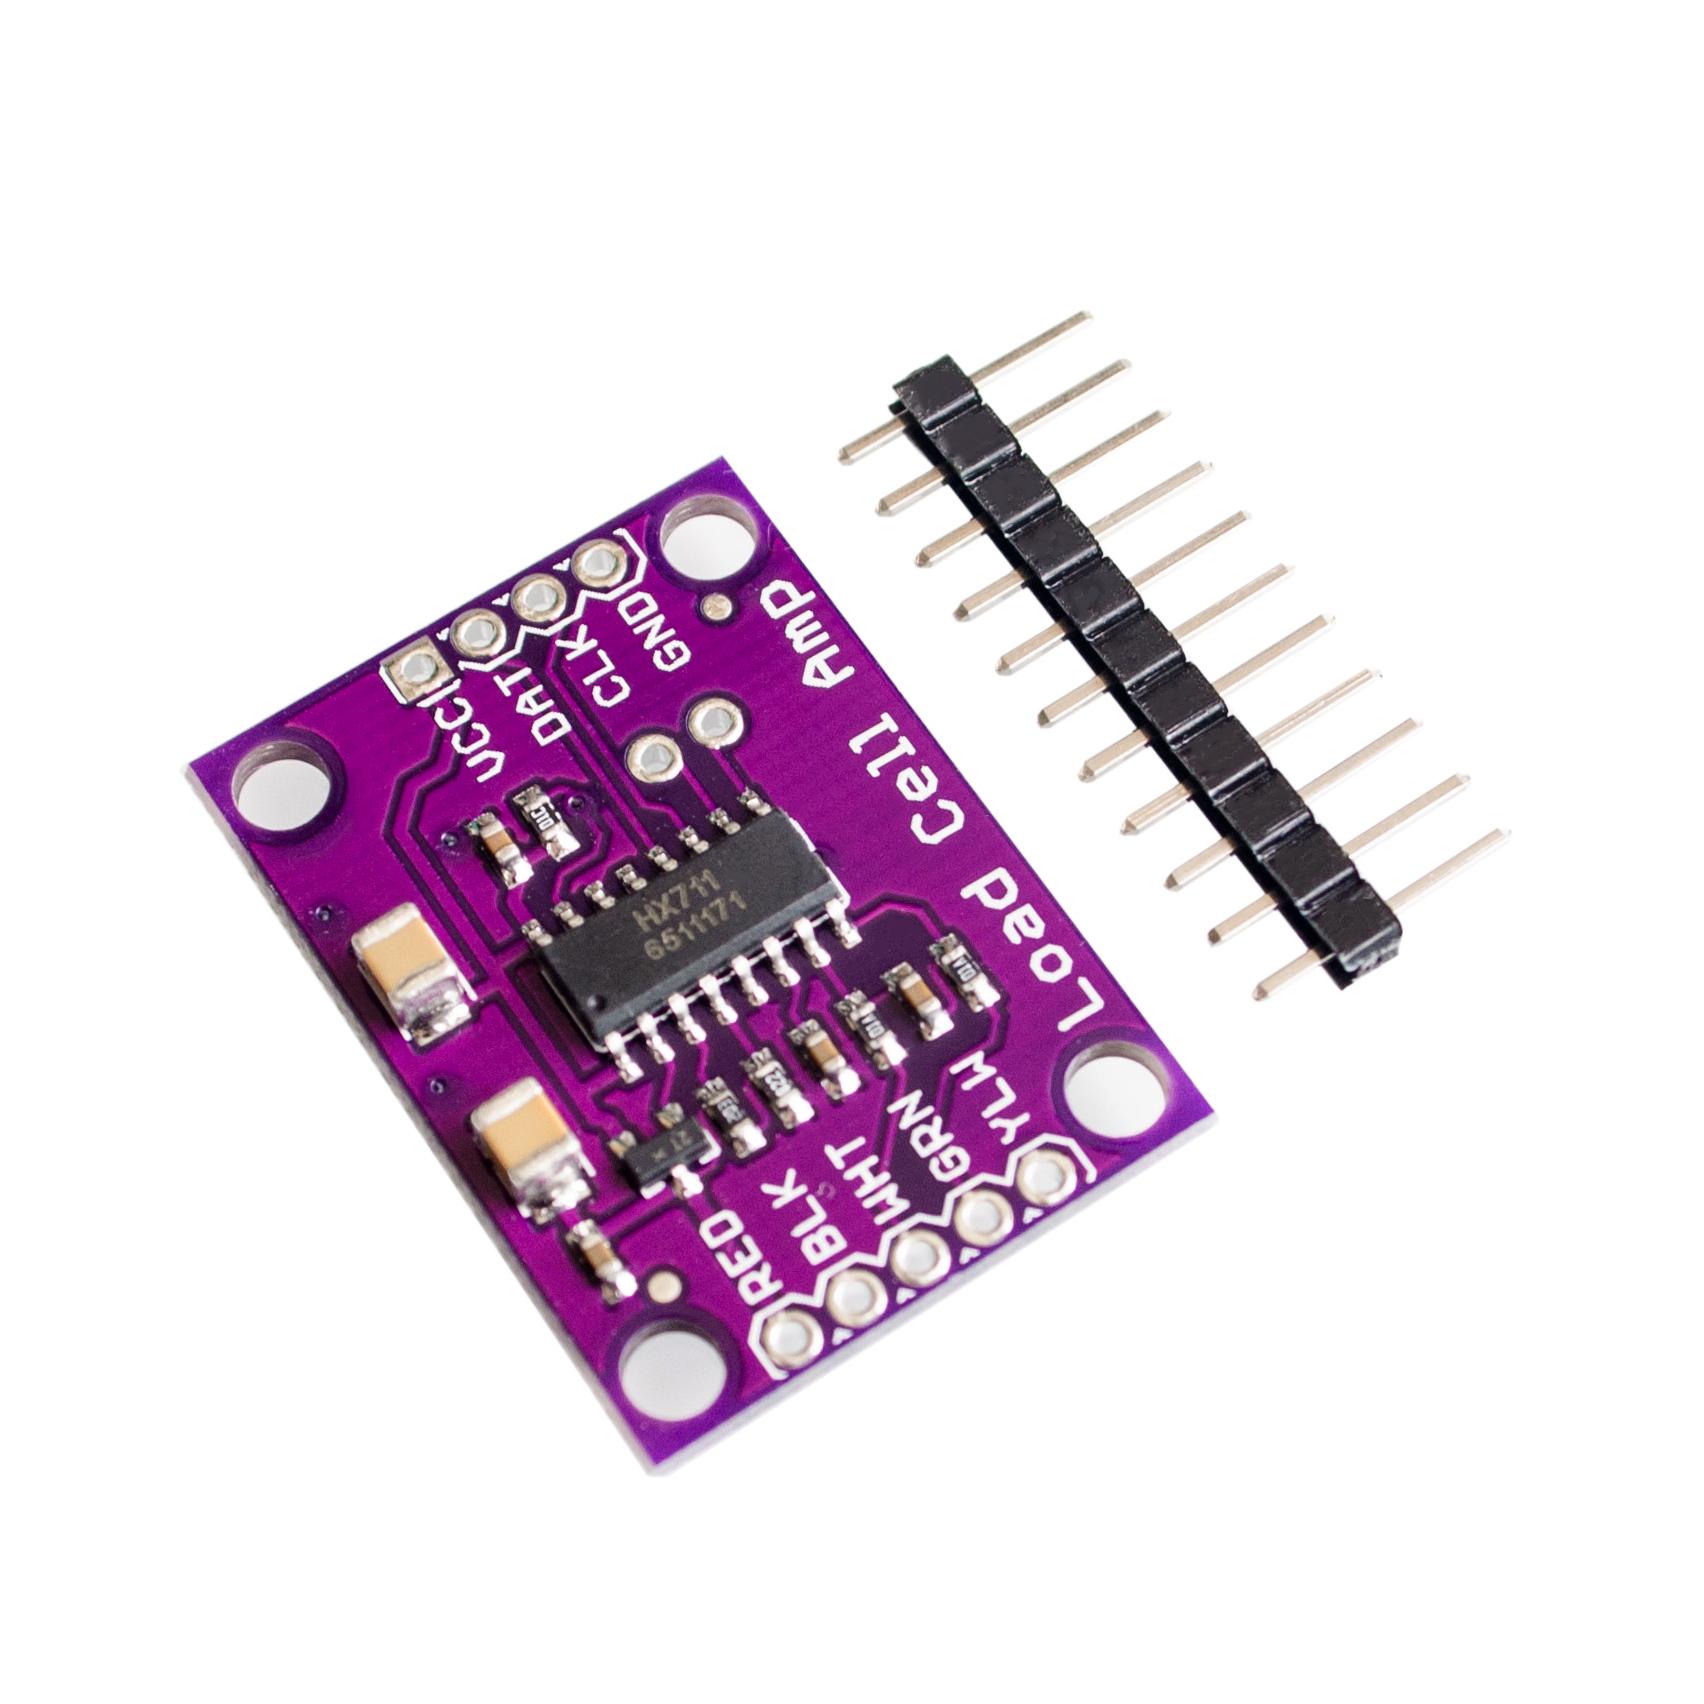 HX711 Weighing Sensor 24-bit A/D Conversion Adapter Load Cell Amplifier Board Weight Sensors